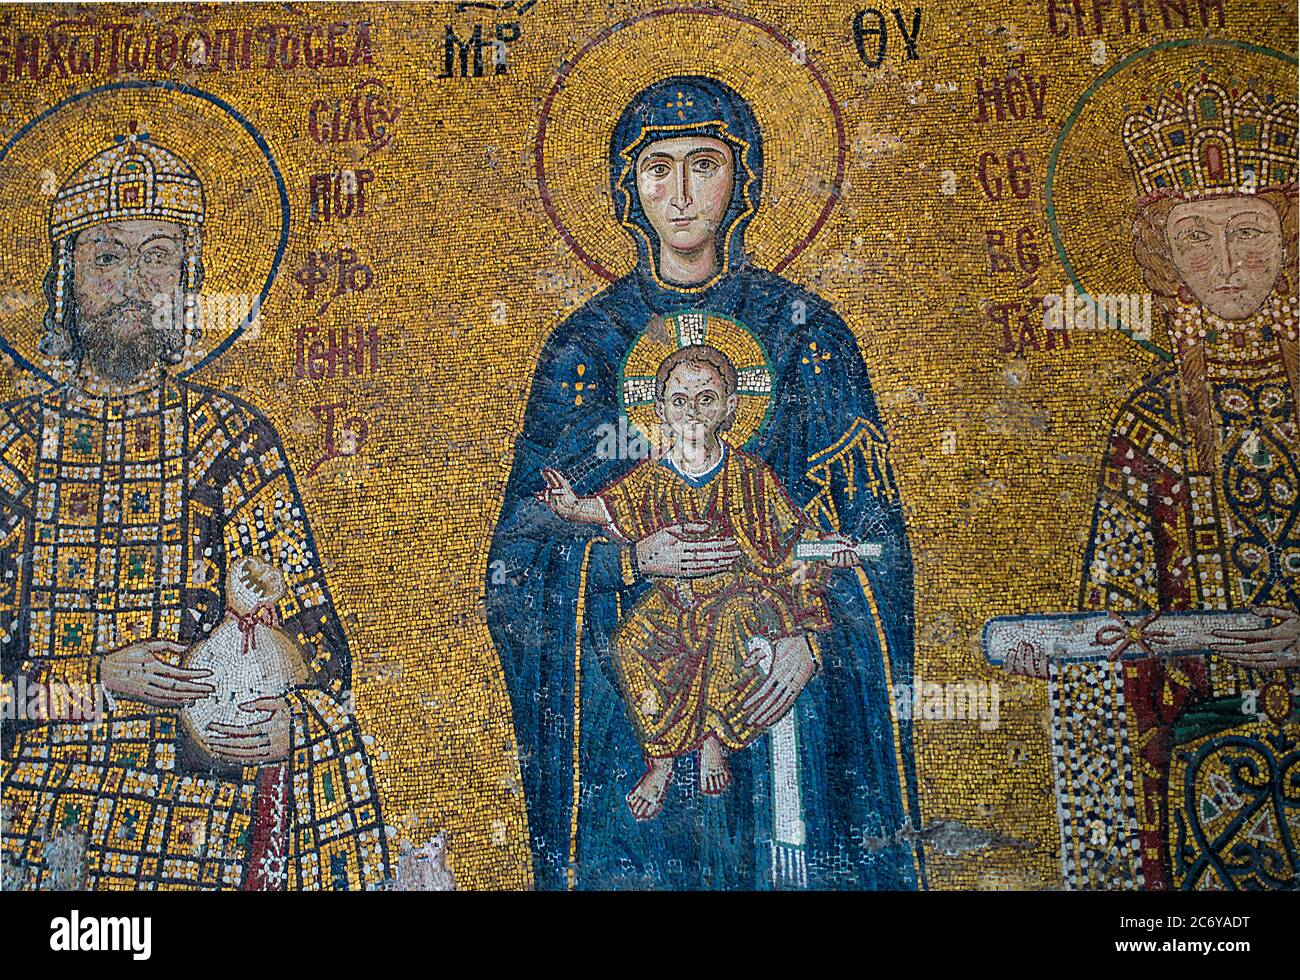 Vierge et enfant Jésus mosaïque chrétienne byzantine Sainte-Sophie, Istanbul, Turquie Banque D'Images